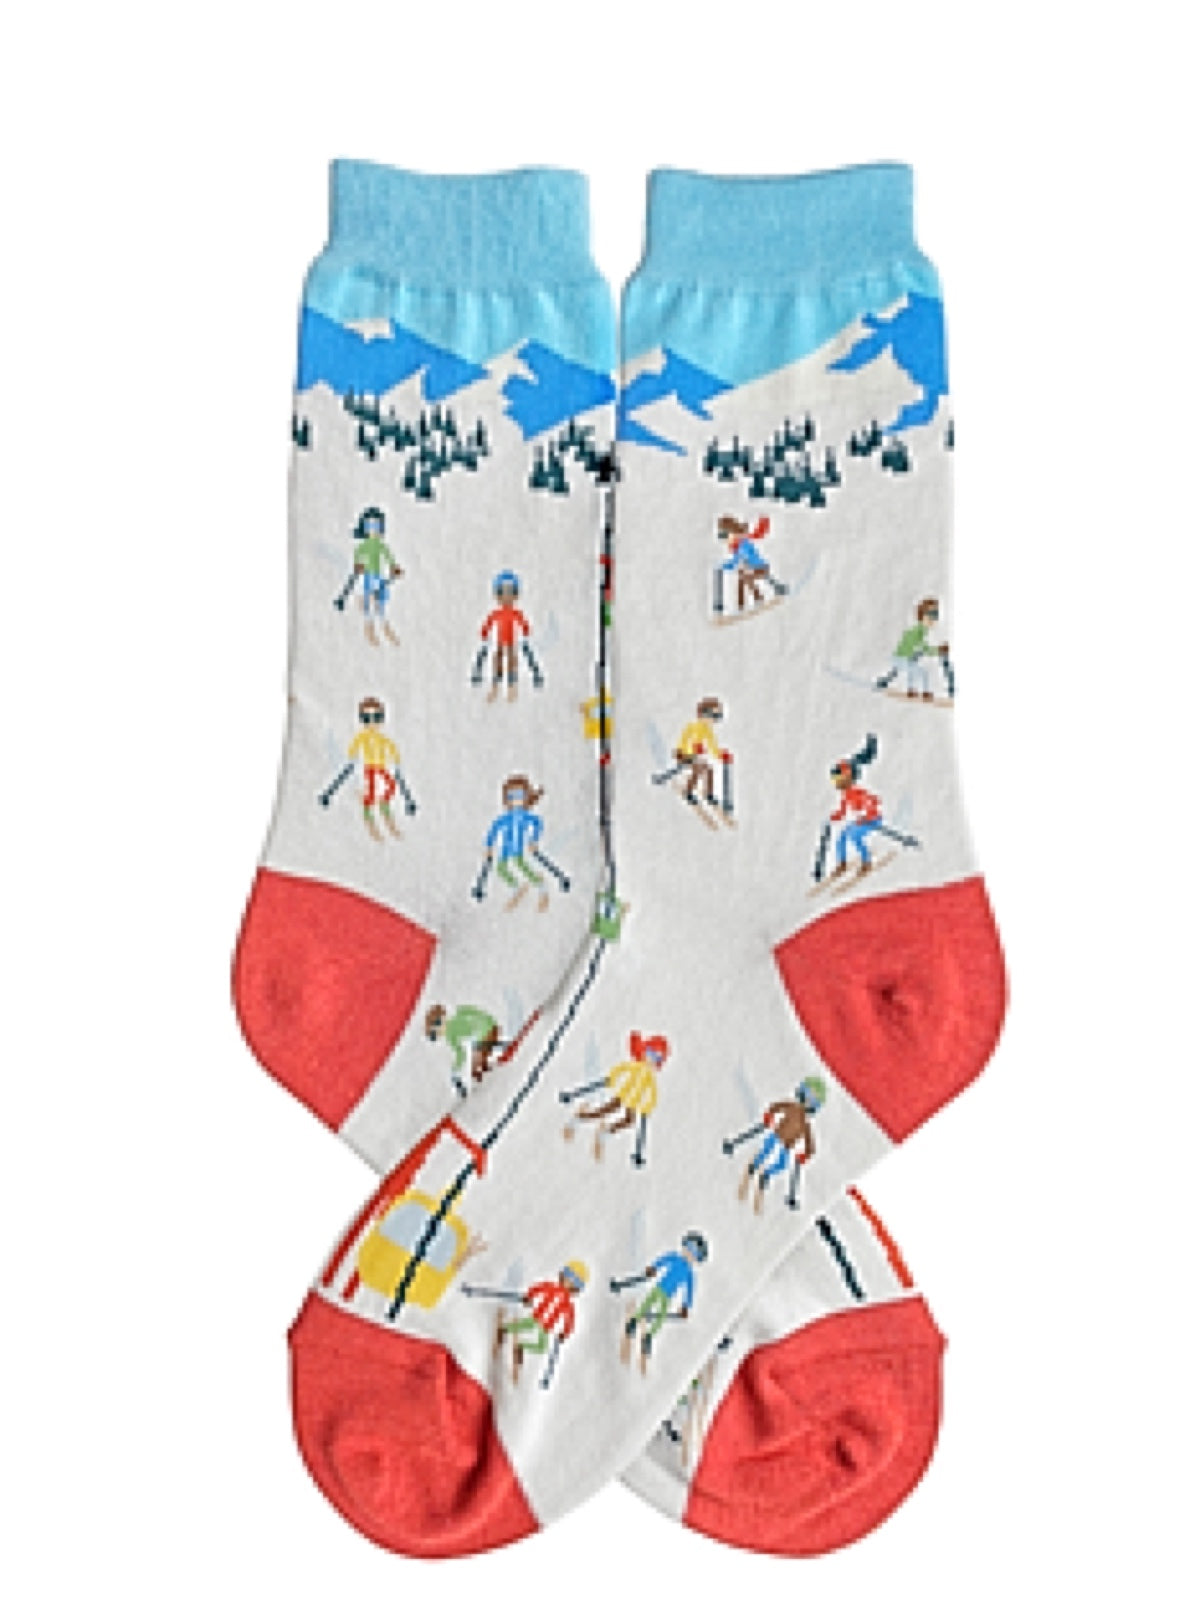 FOOT TRAFFIC Brand Ladies Skiing Socks | Novelty Socks for Less